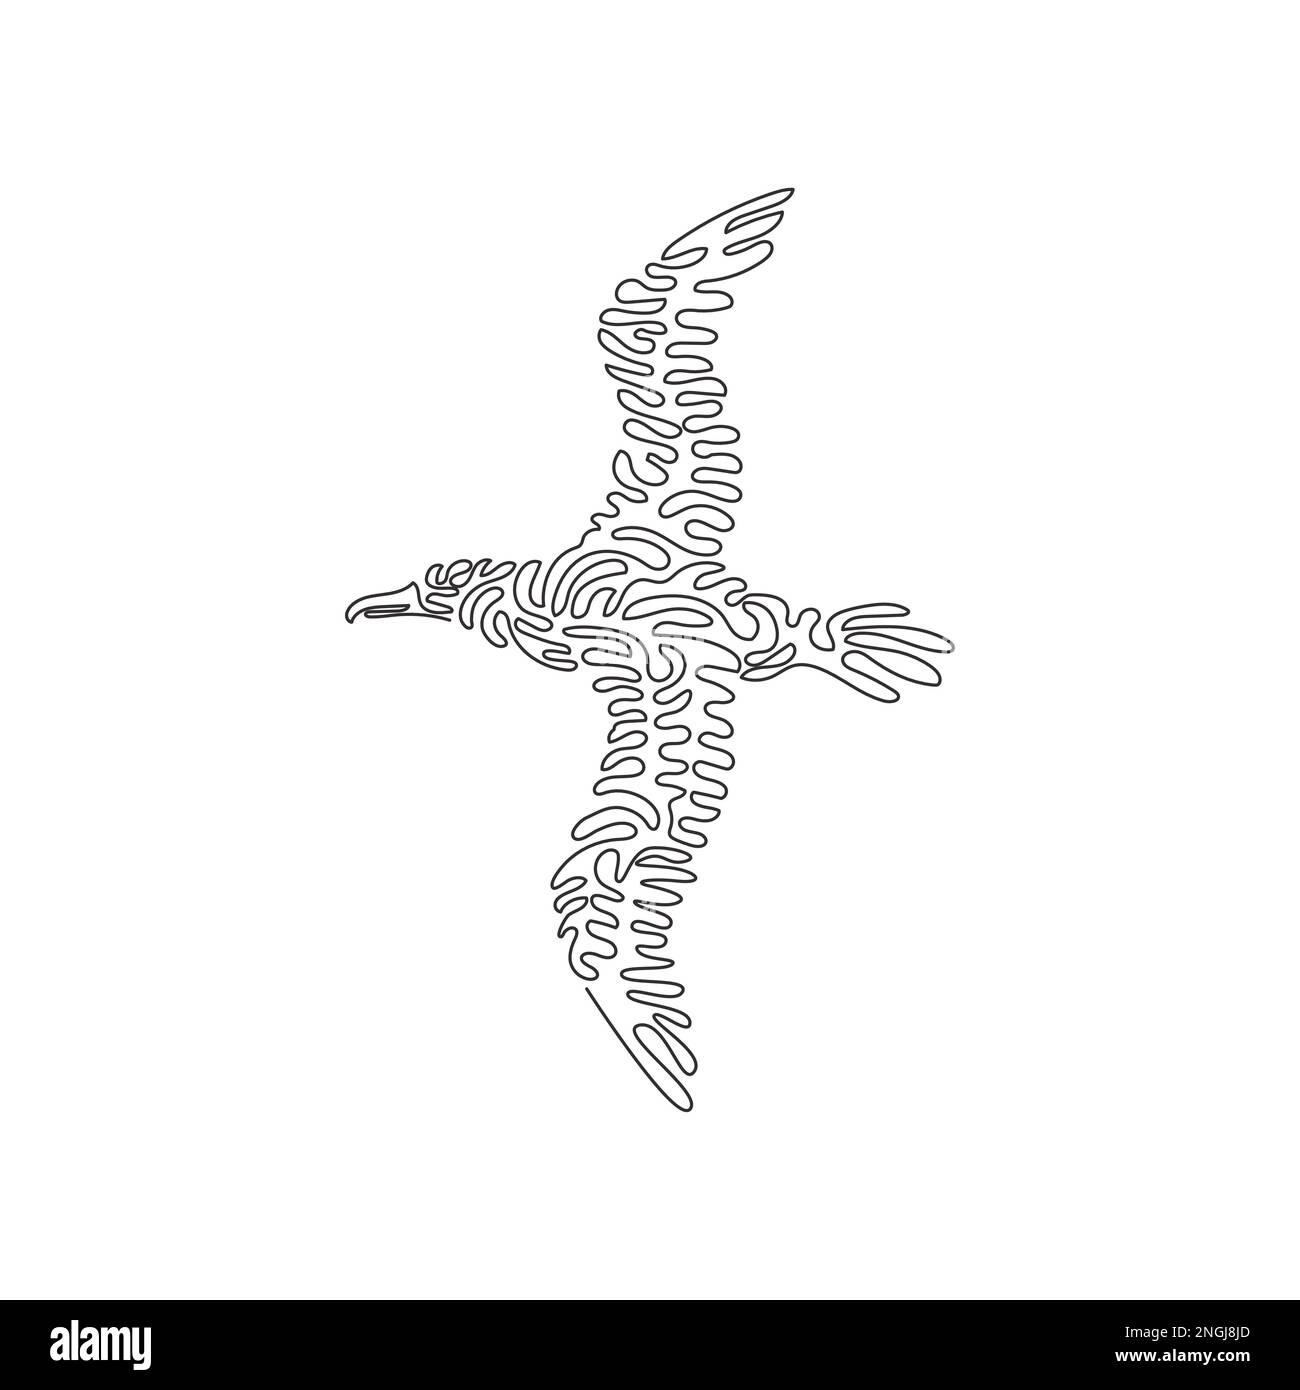 Dessin d'une seule ligne curly de cute albatros art abstrait Dessin en ligne continue dessin graphique illustration vectorielle de l'albatros a des ailes larges Illustration de Vecteur